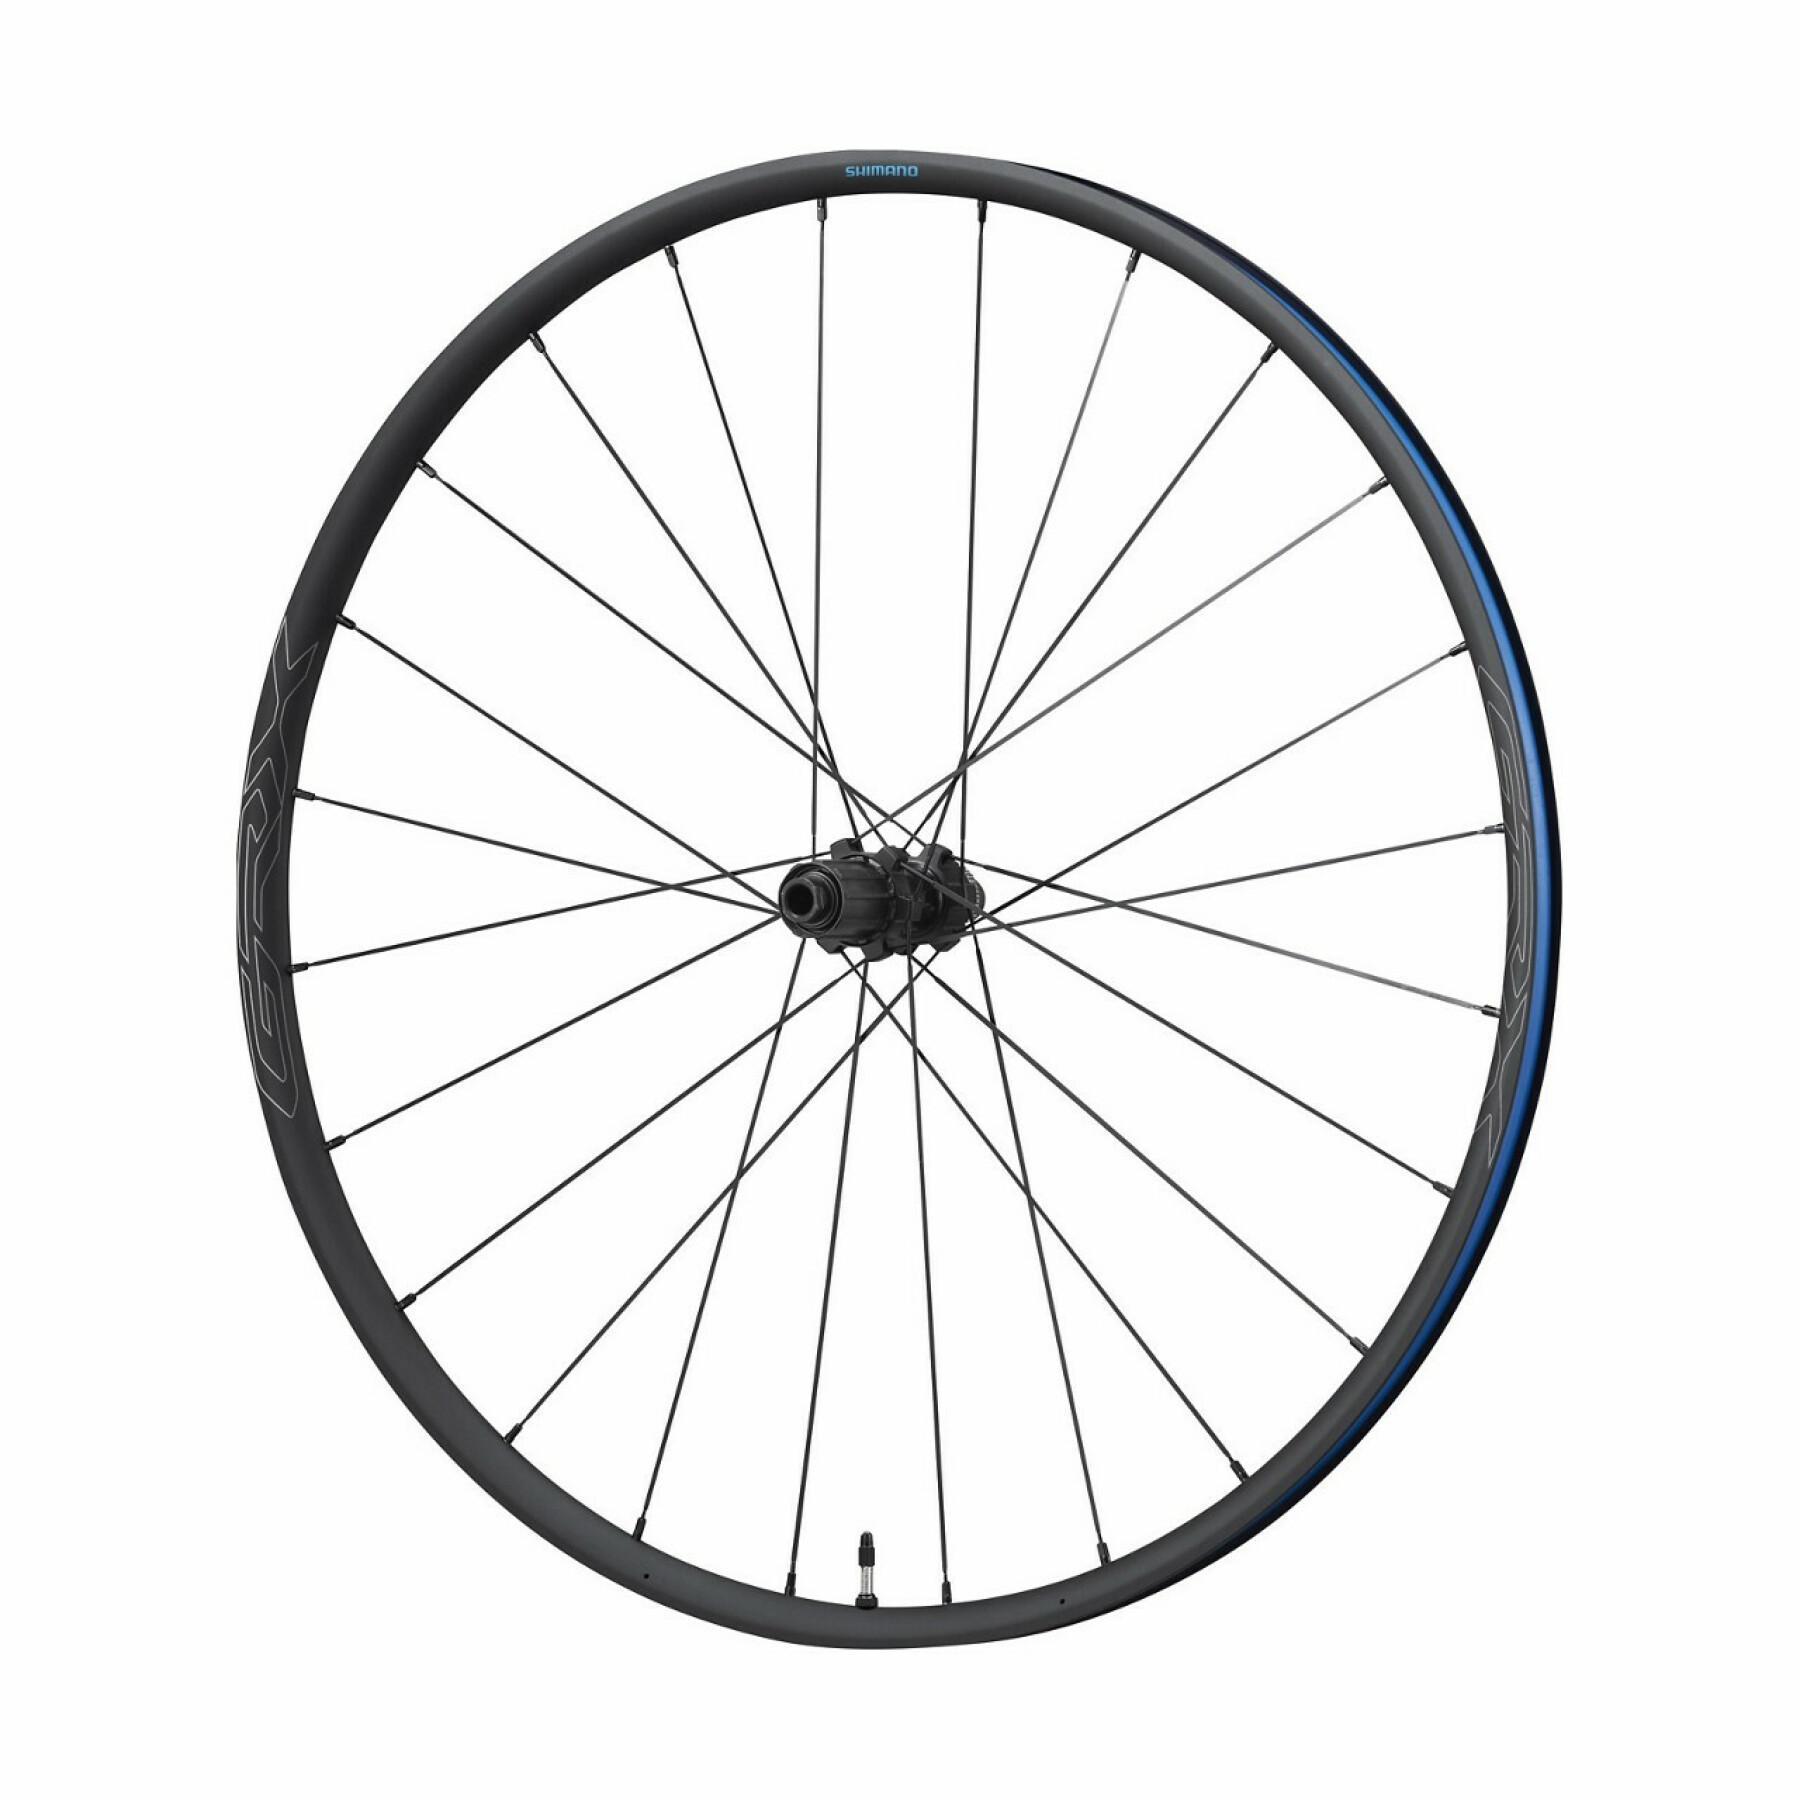 Bike wheel 10/11v disc brake central locking Shimano GRX WH-RX570-TL-R12-700C 10/11 v